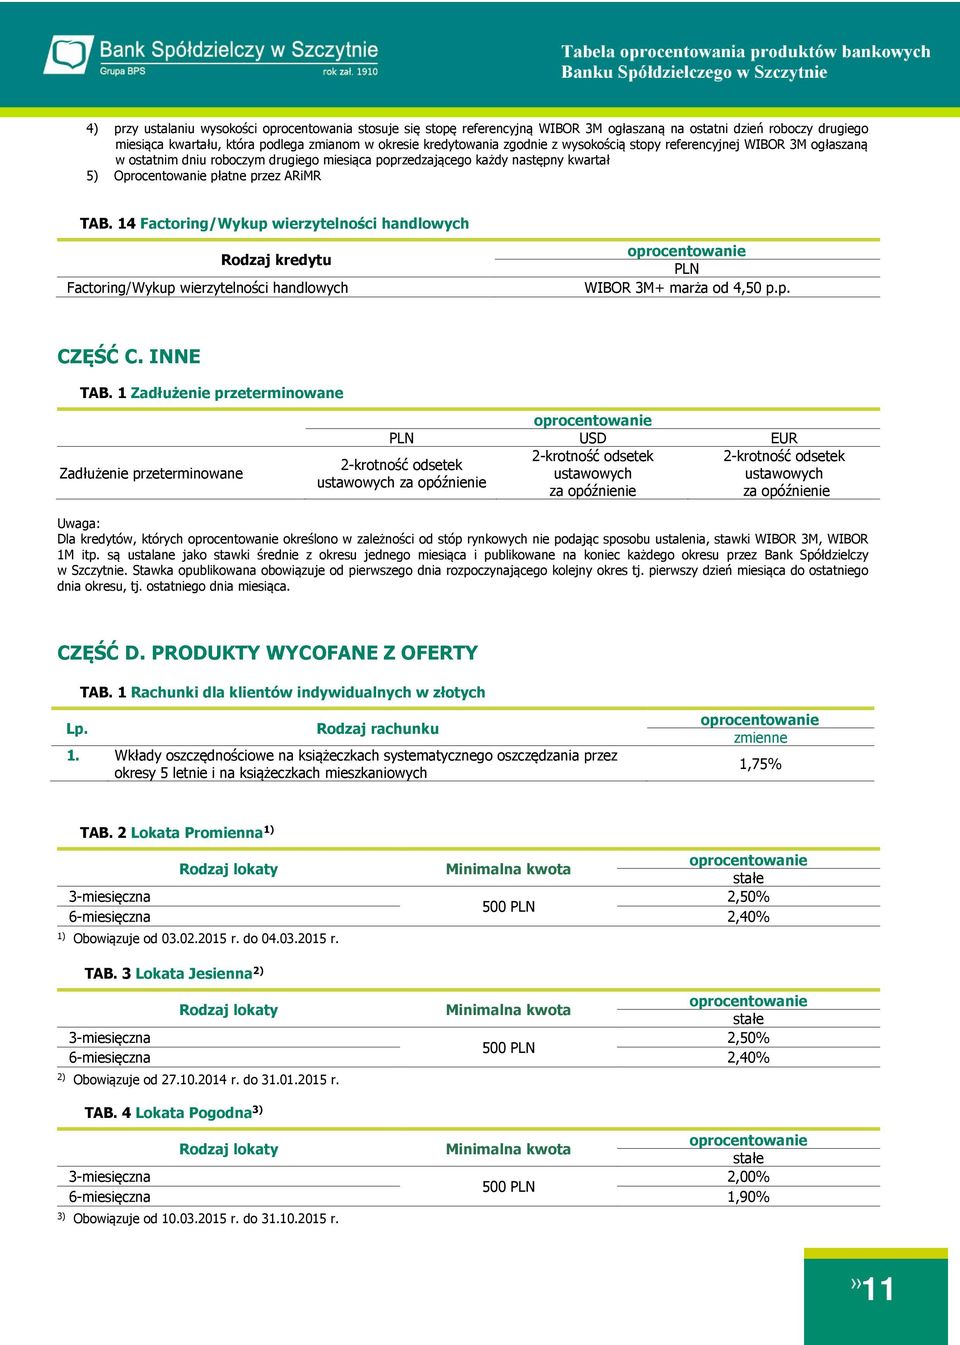 14 Factoring/Wykup wierzytelności handlowych Rodzaj kredytu Factoring/Wykup wierzytelności handlowych PLN 4,50 p.p. CZĘŚĆ C. INNE TAB.